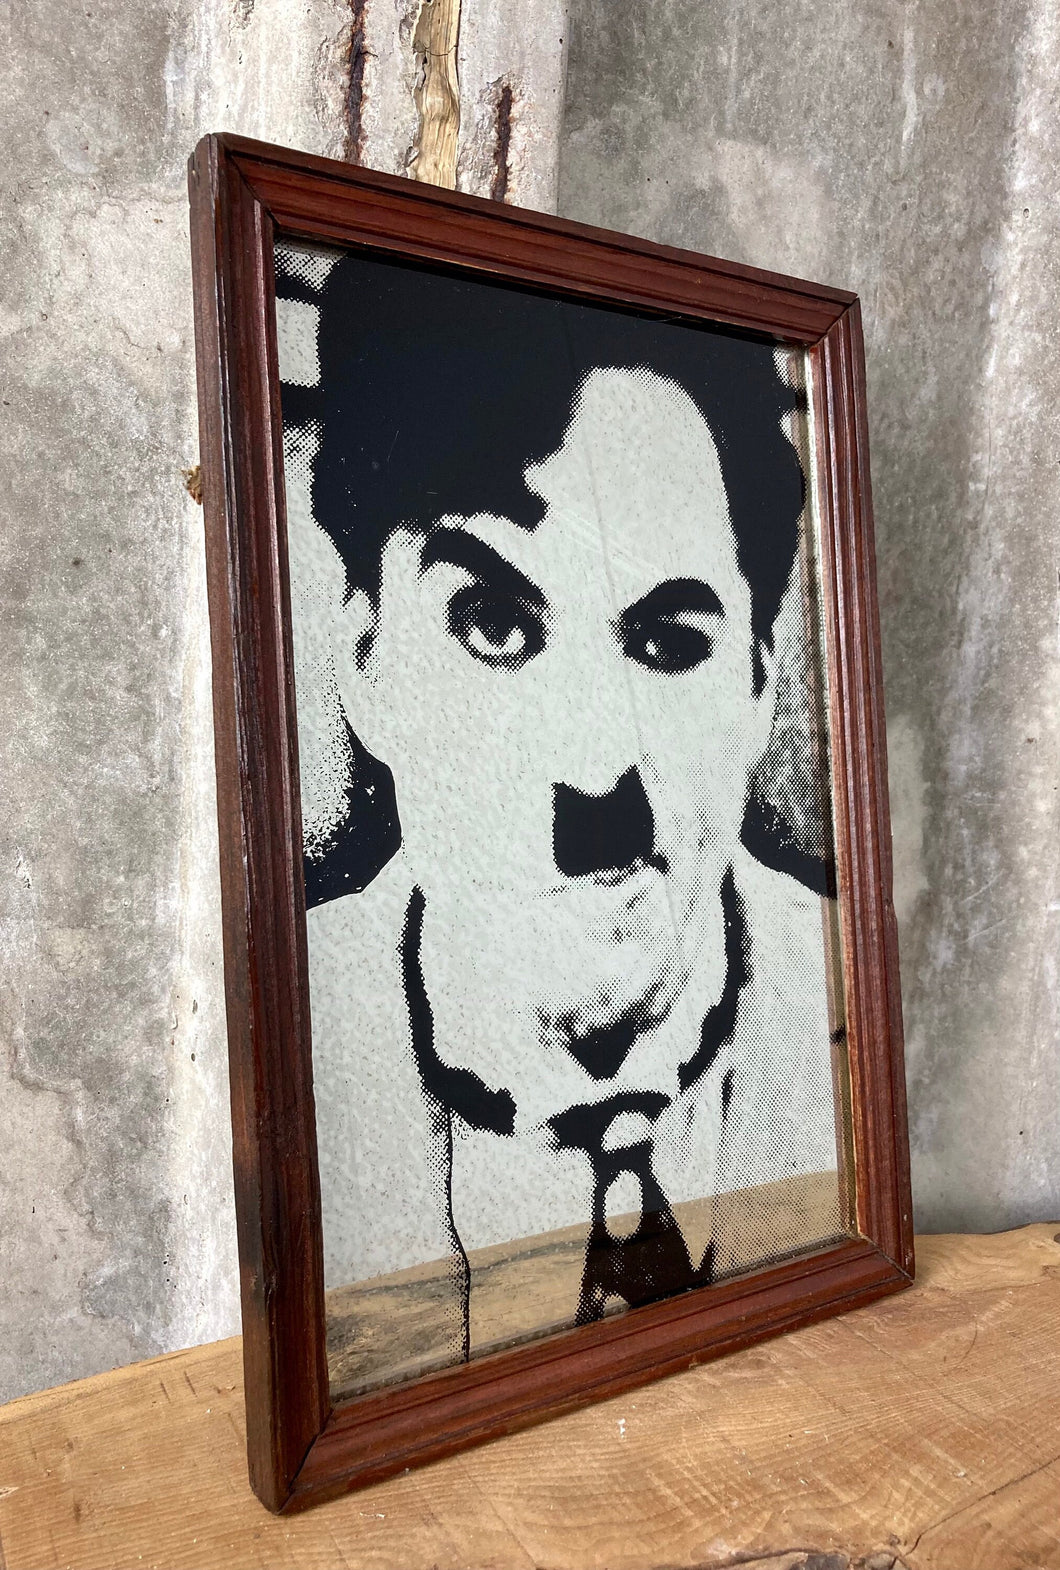 Vintage Charlie Chaplin Portrait Mirror, Movie Memorabilia, Comedy Collection